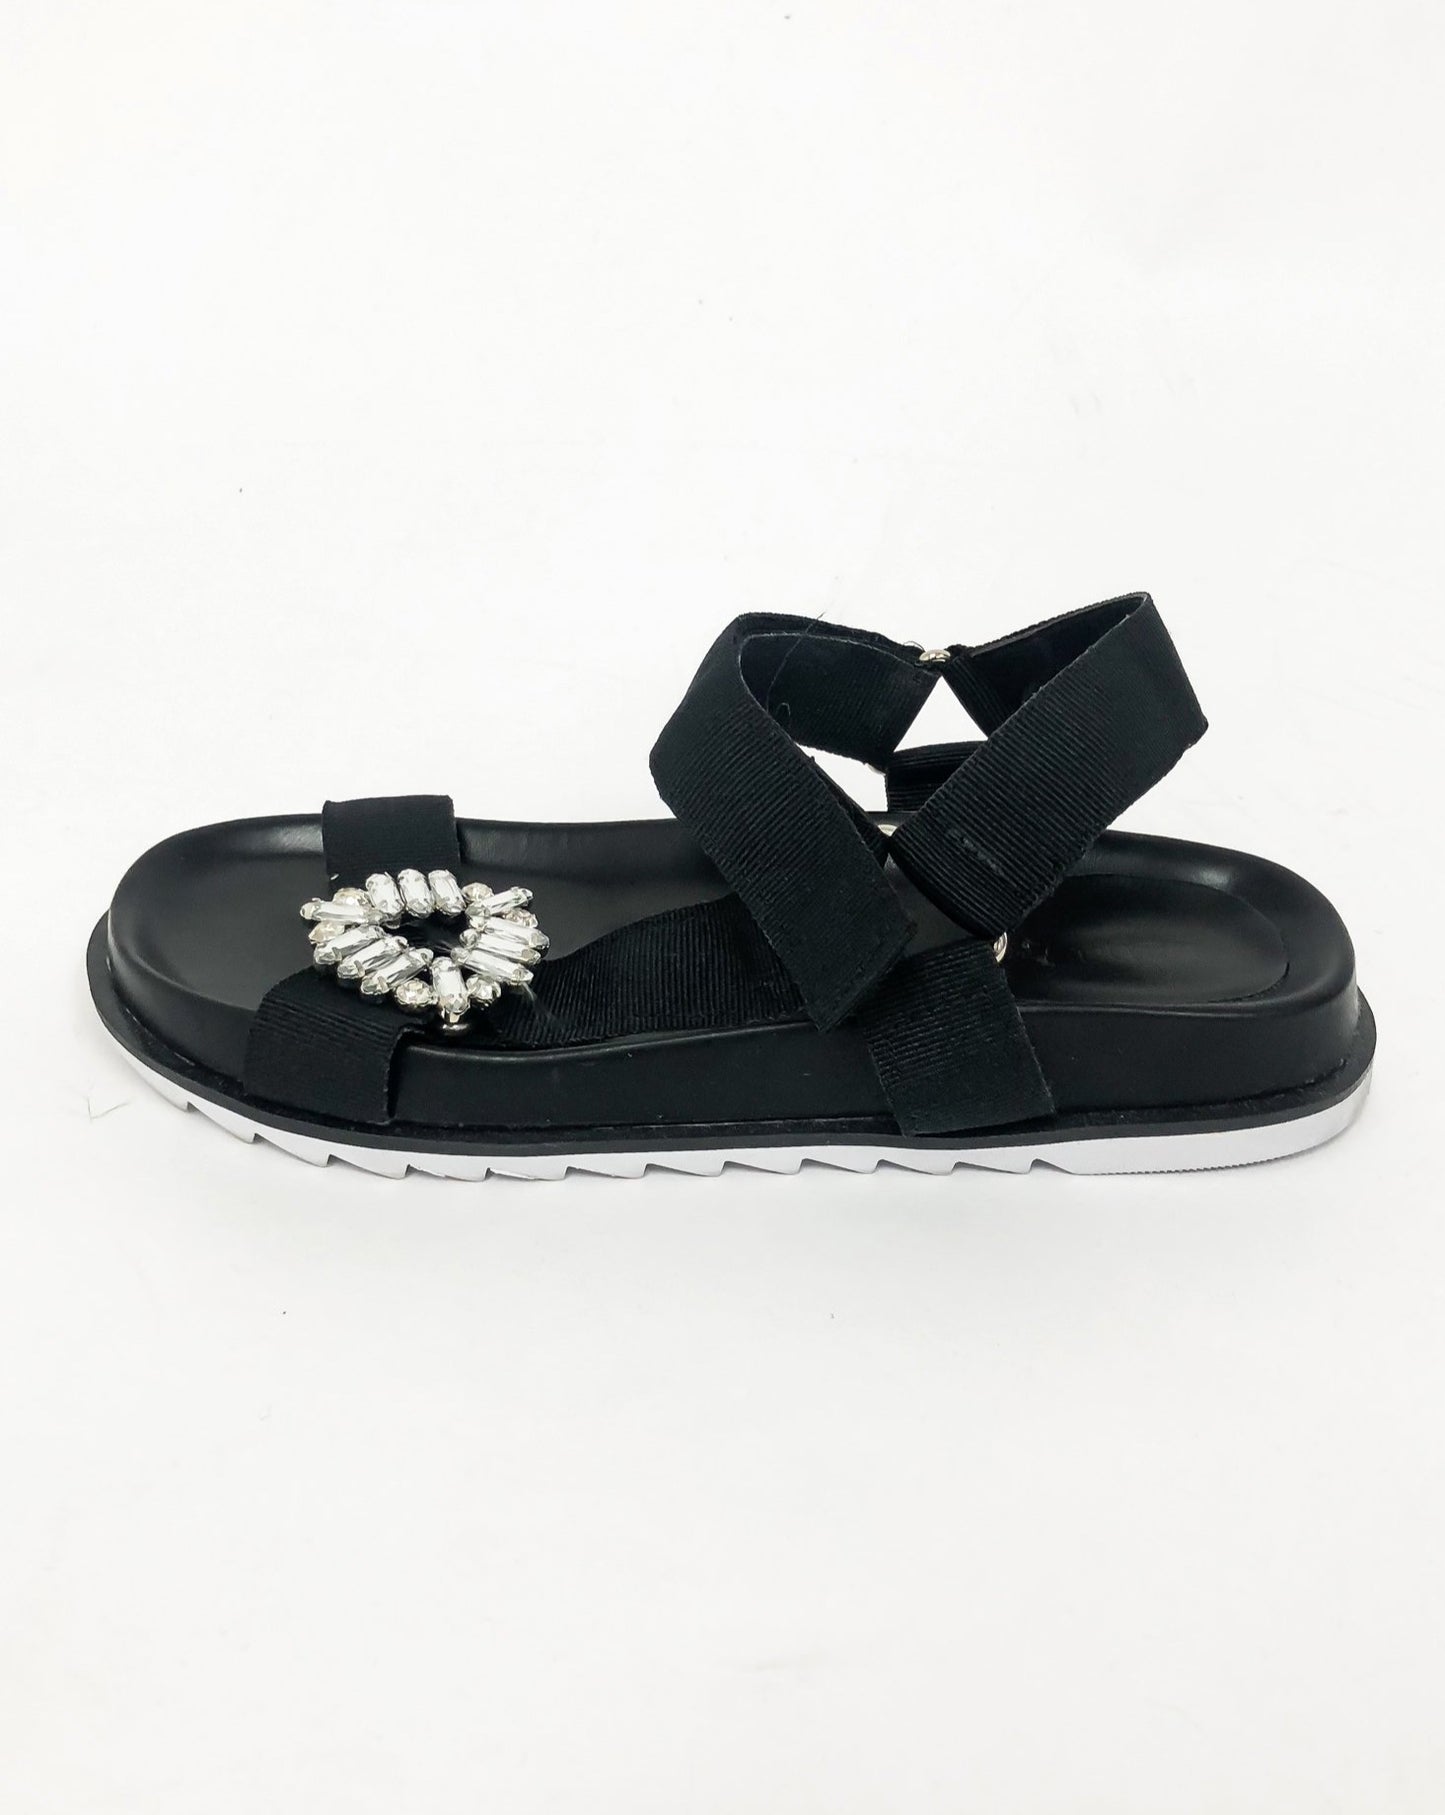 black strappy diamond sandals *pre-order*